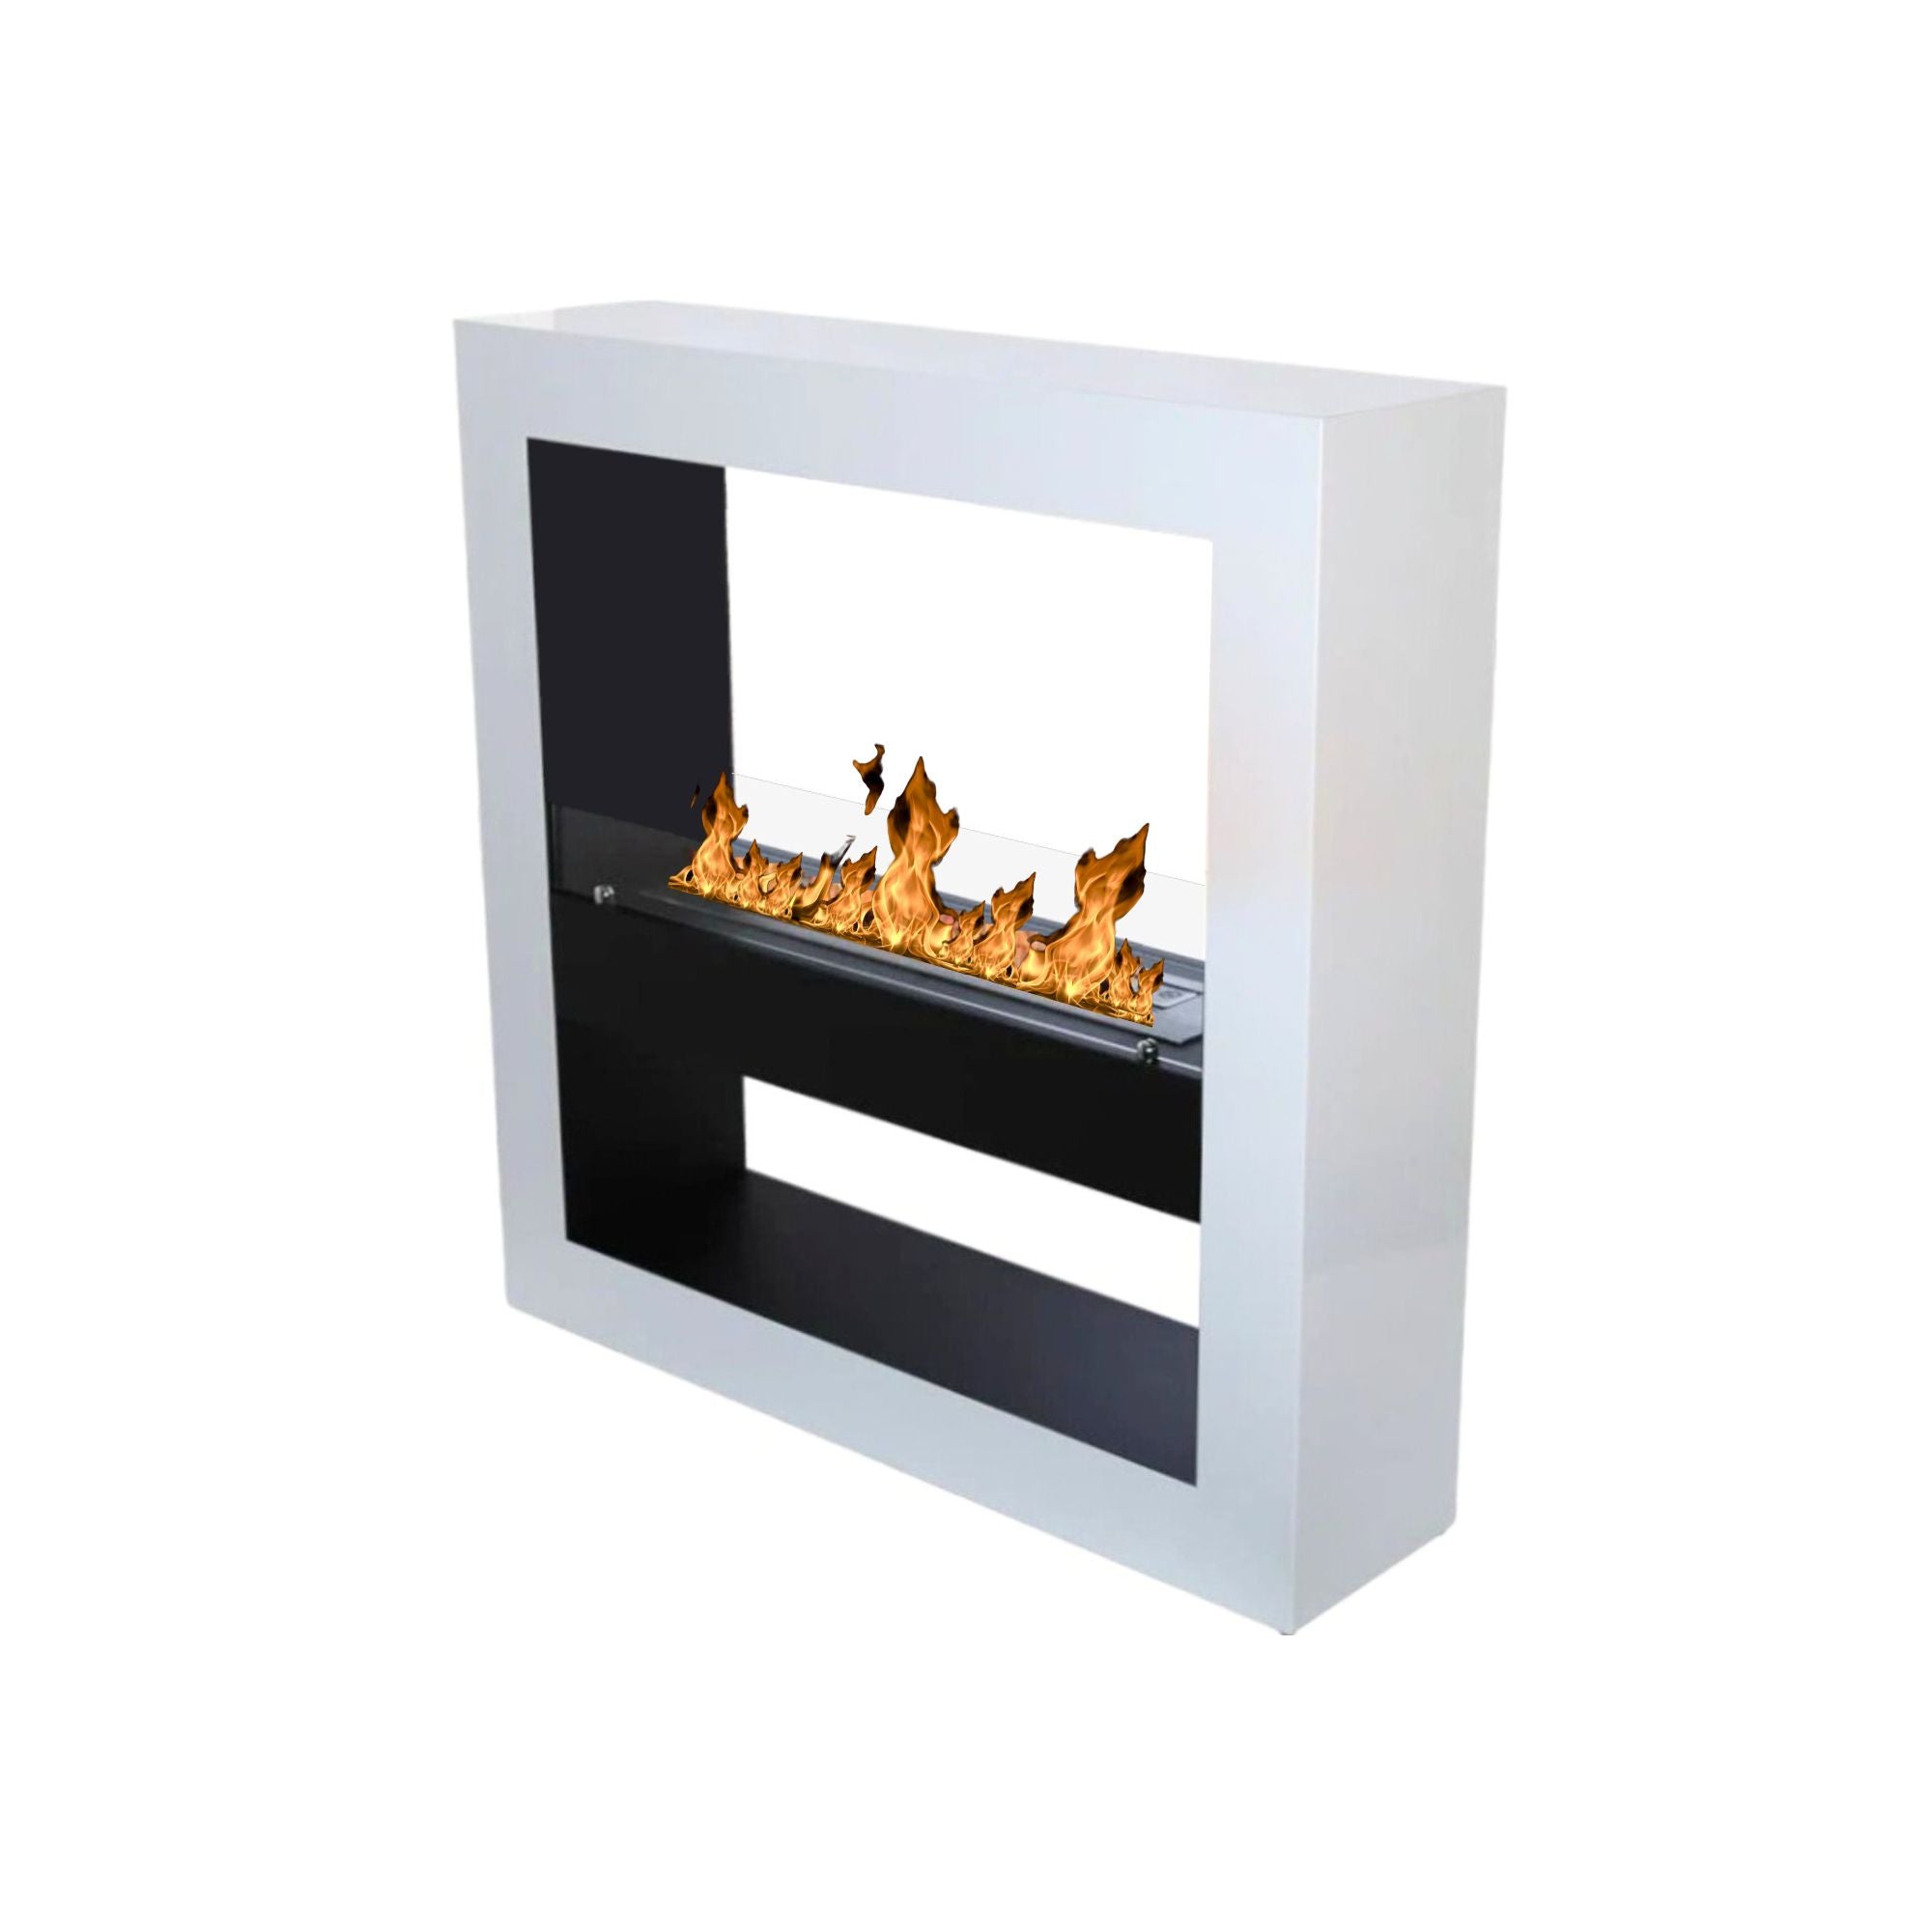 Gari Bio-Ethanol Freestanding See-Through Fireplace 120 cm